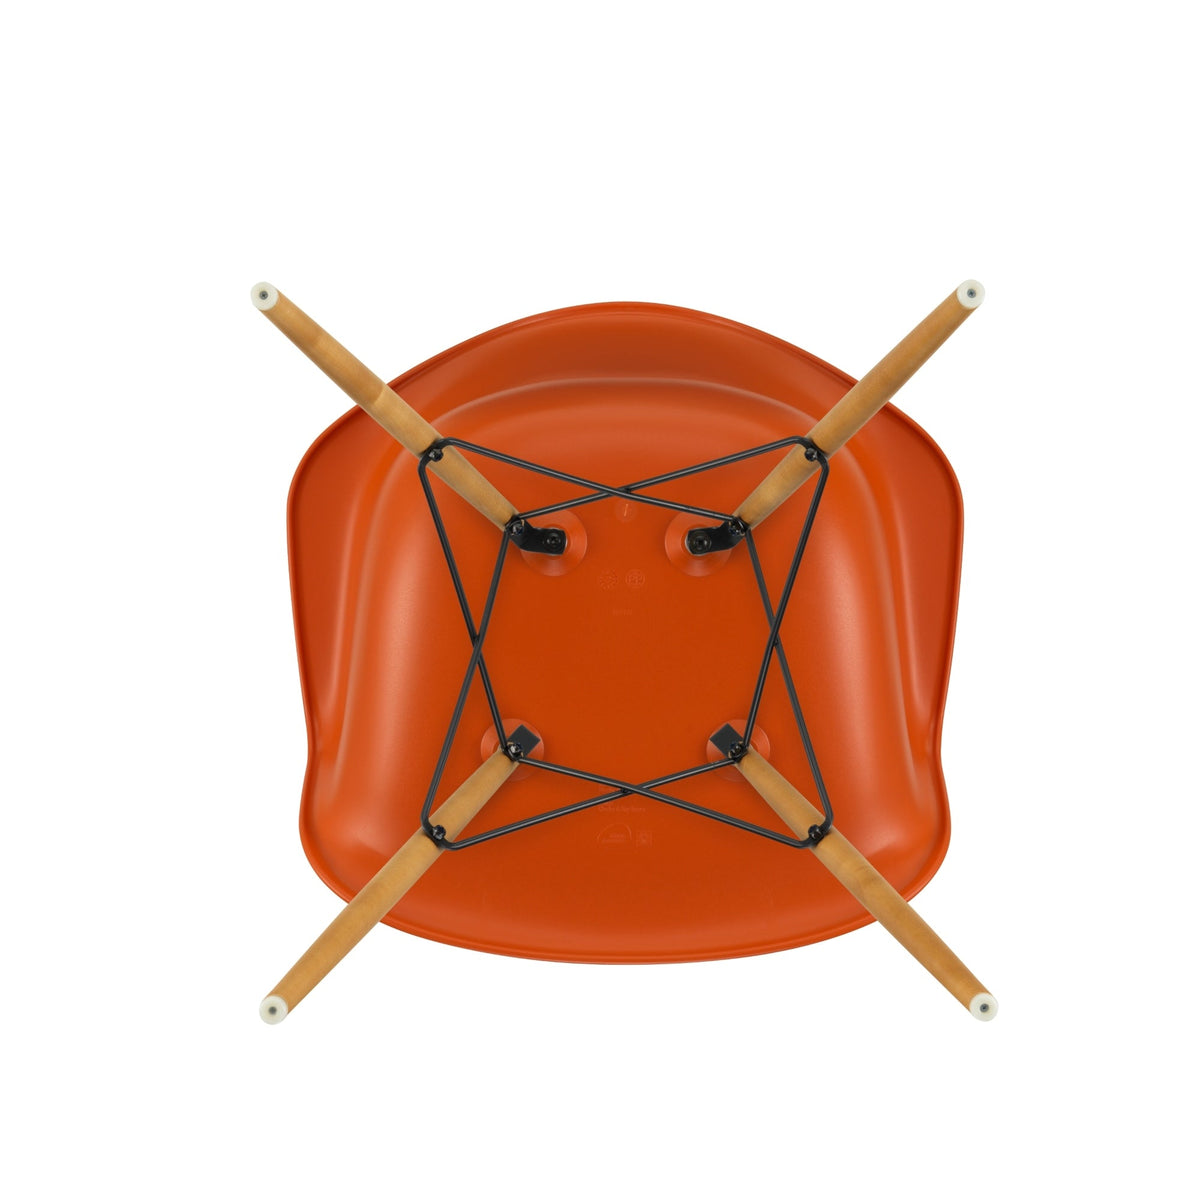 Vitra Eames DAW tuoli oranssi/vaahtera - Laatukaluste